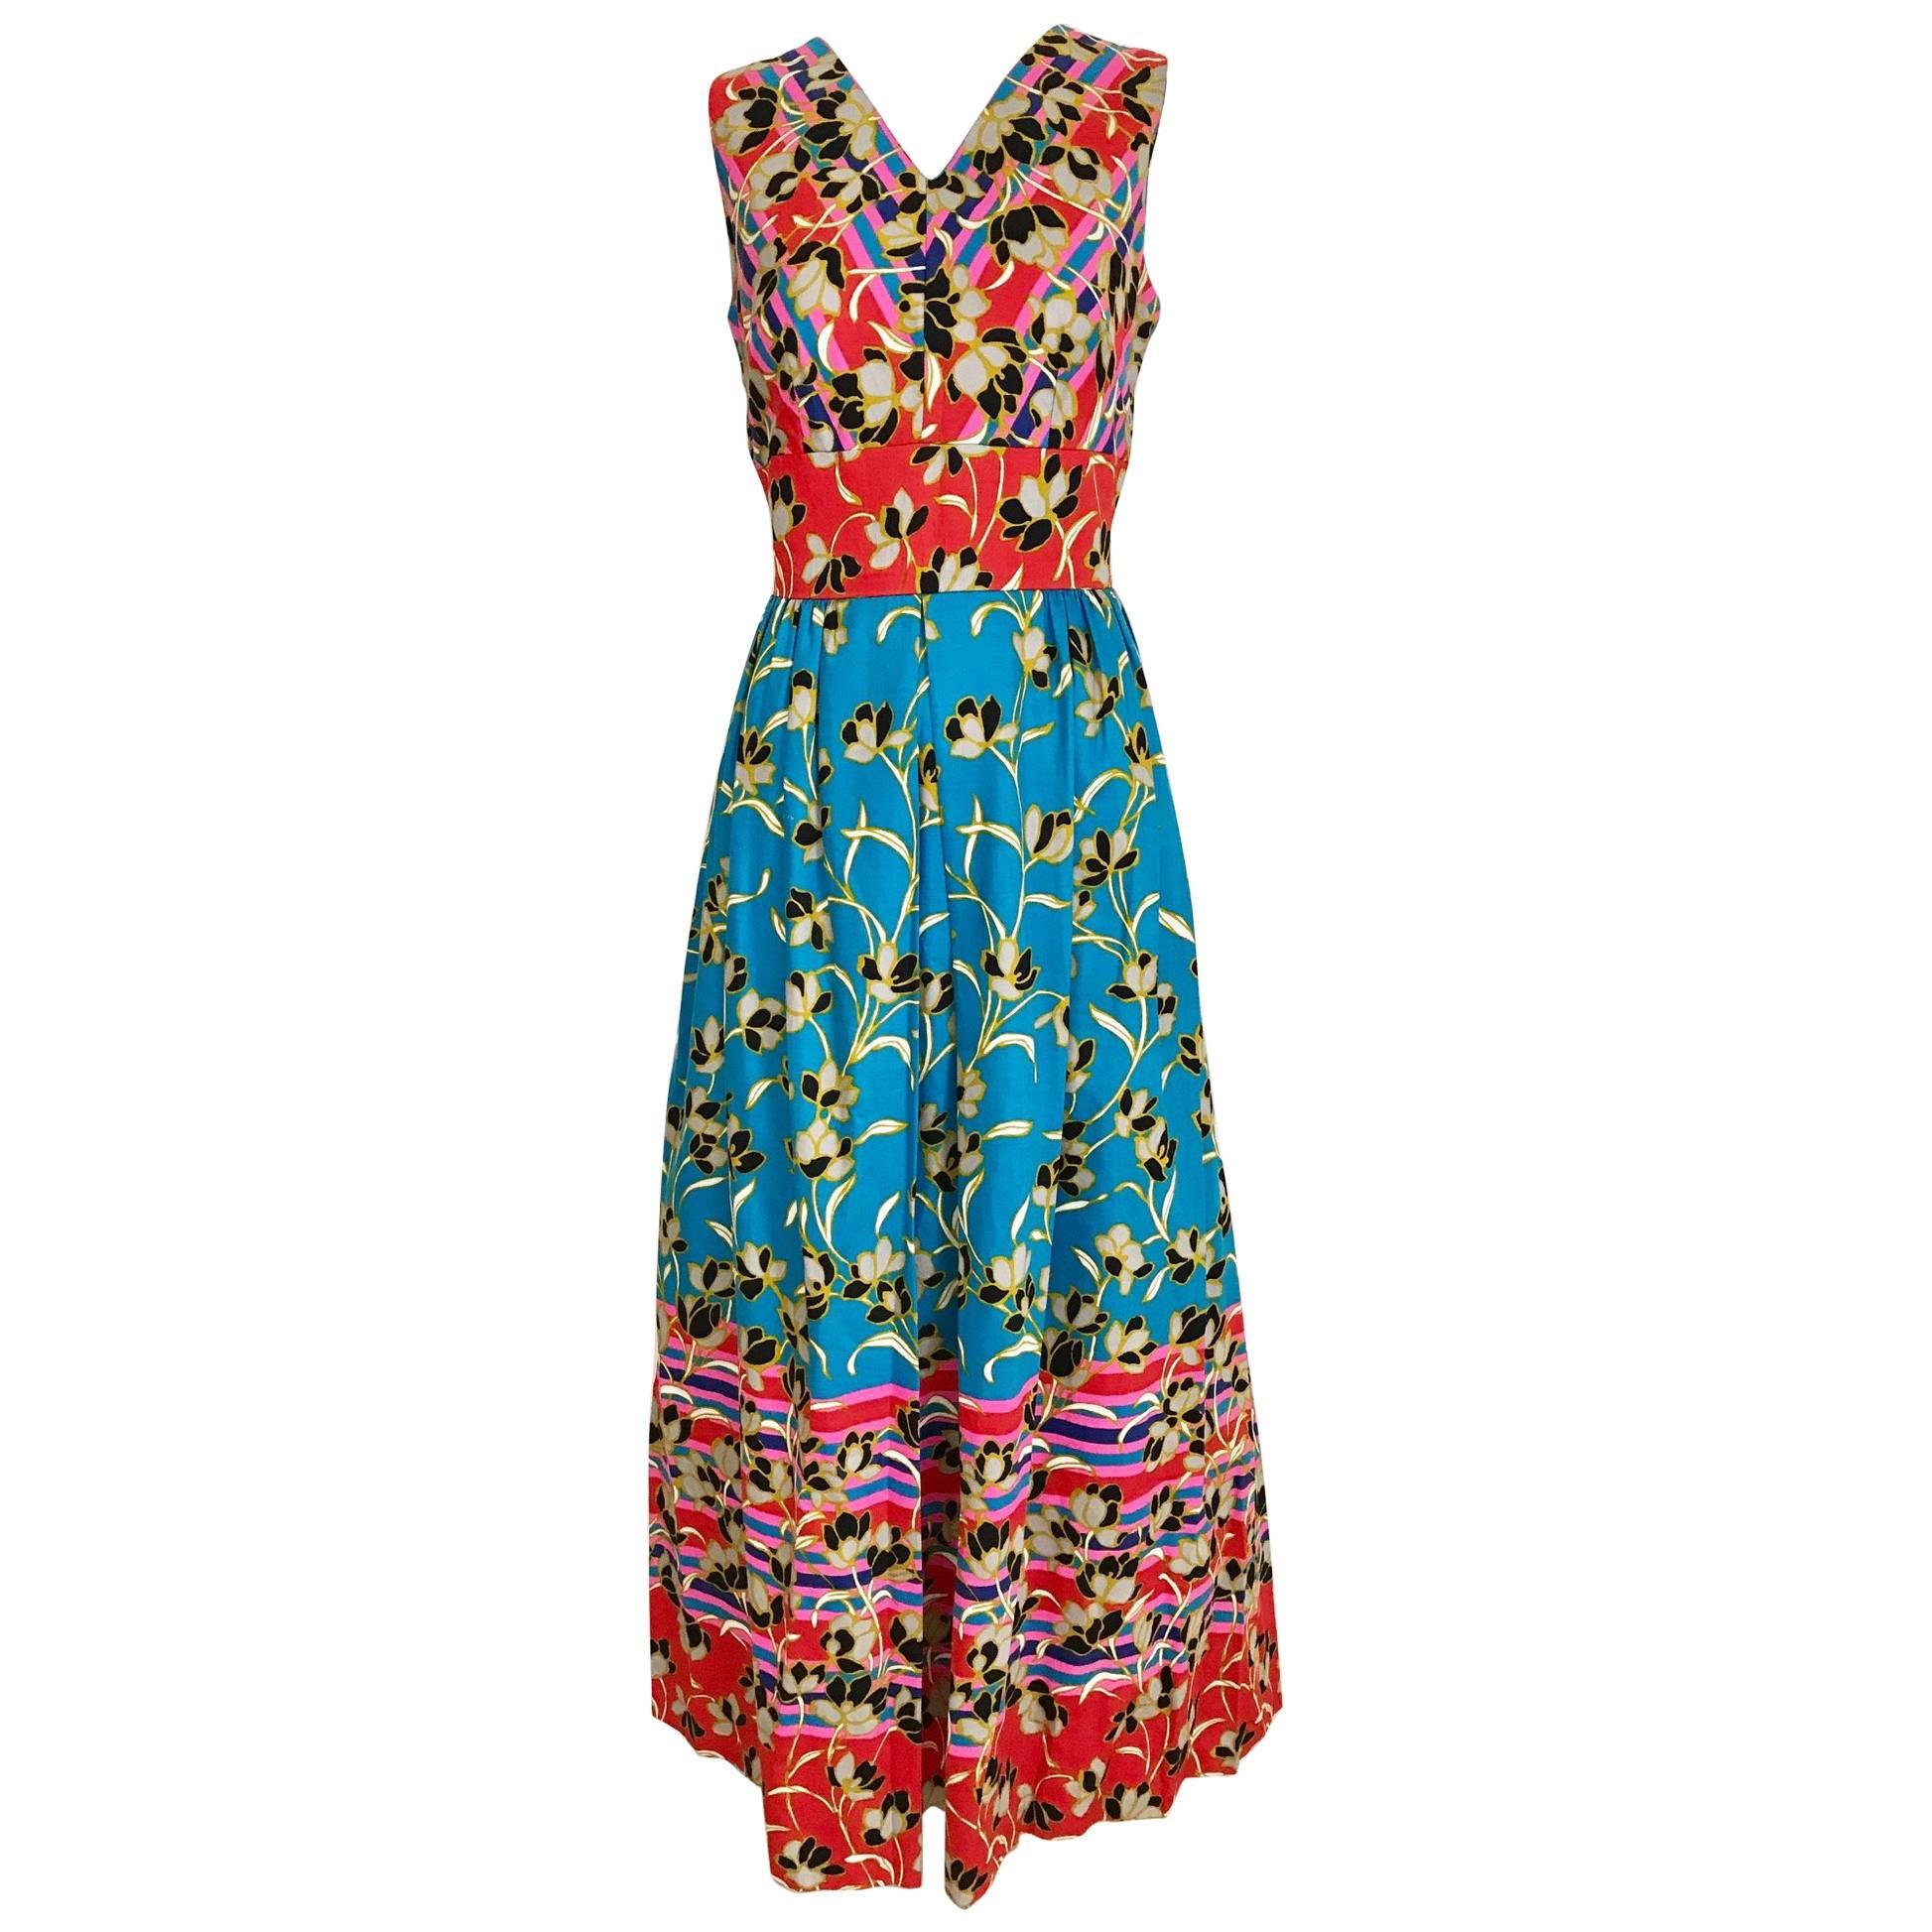 1970s Floral Print Cotton Sleeveless Summer Dress